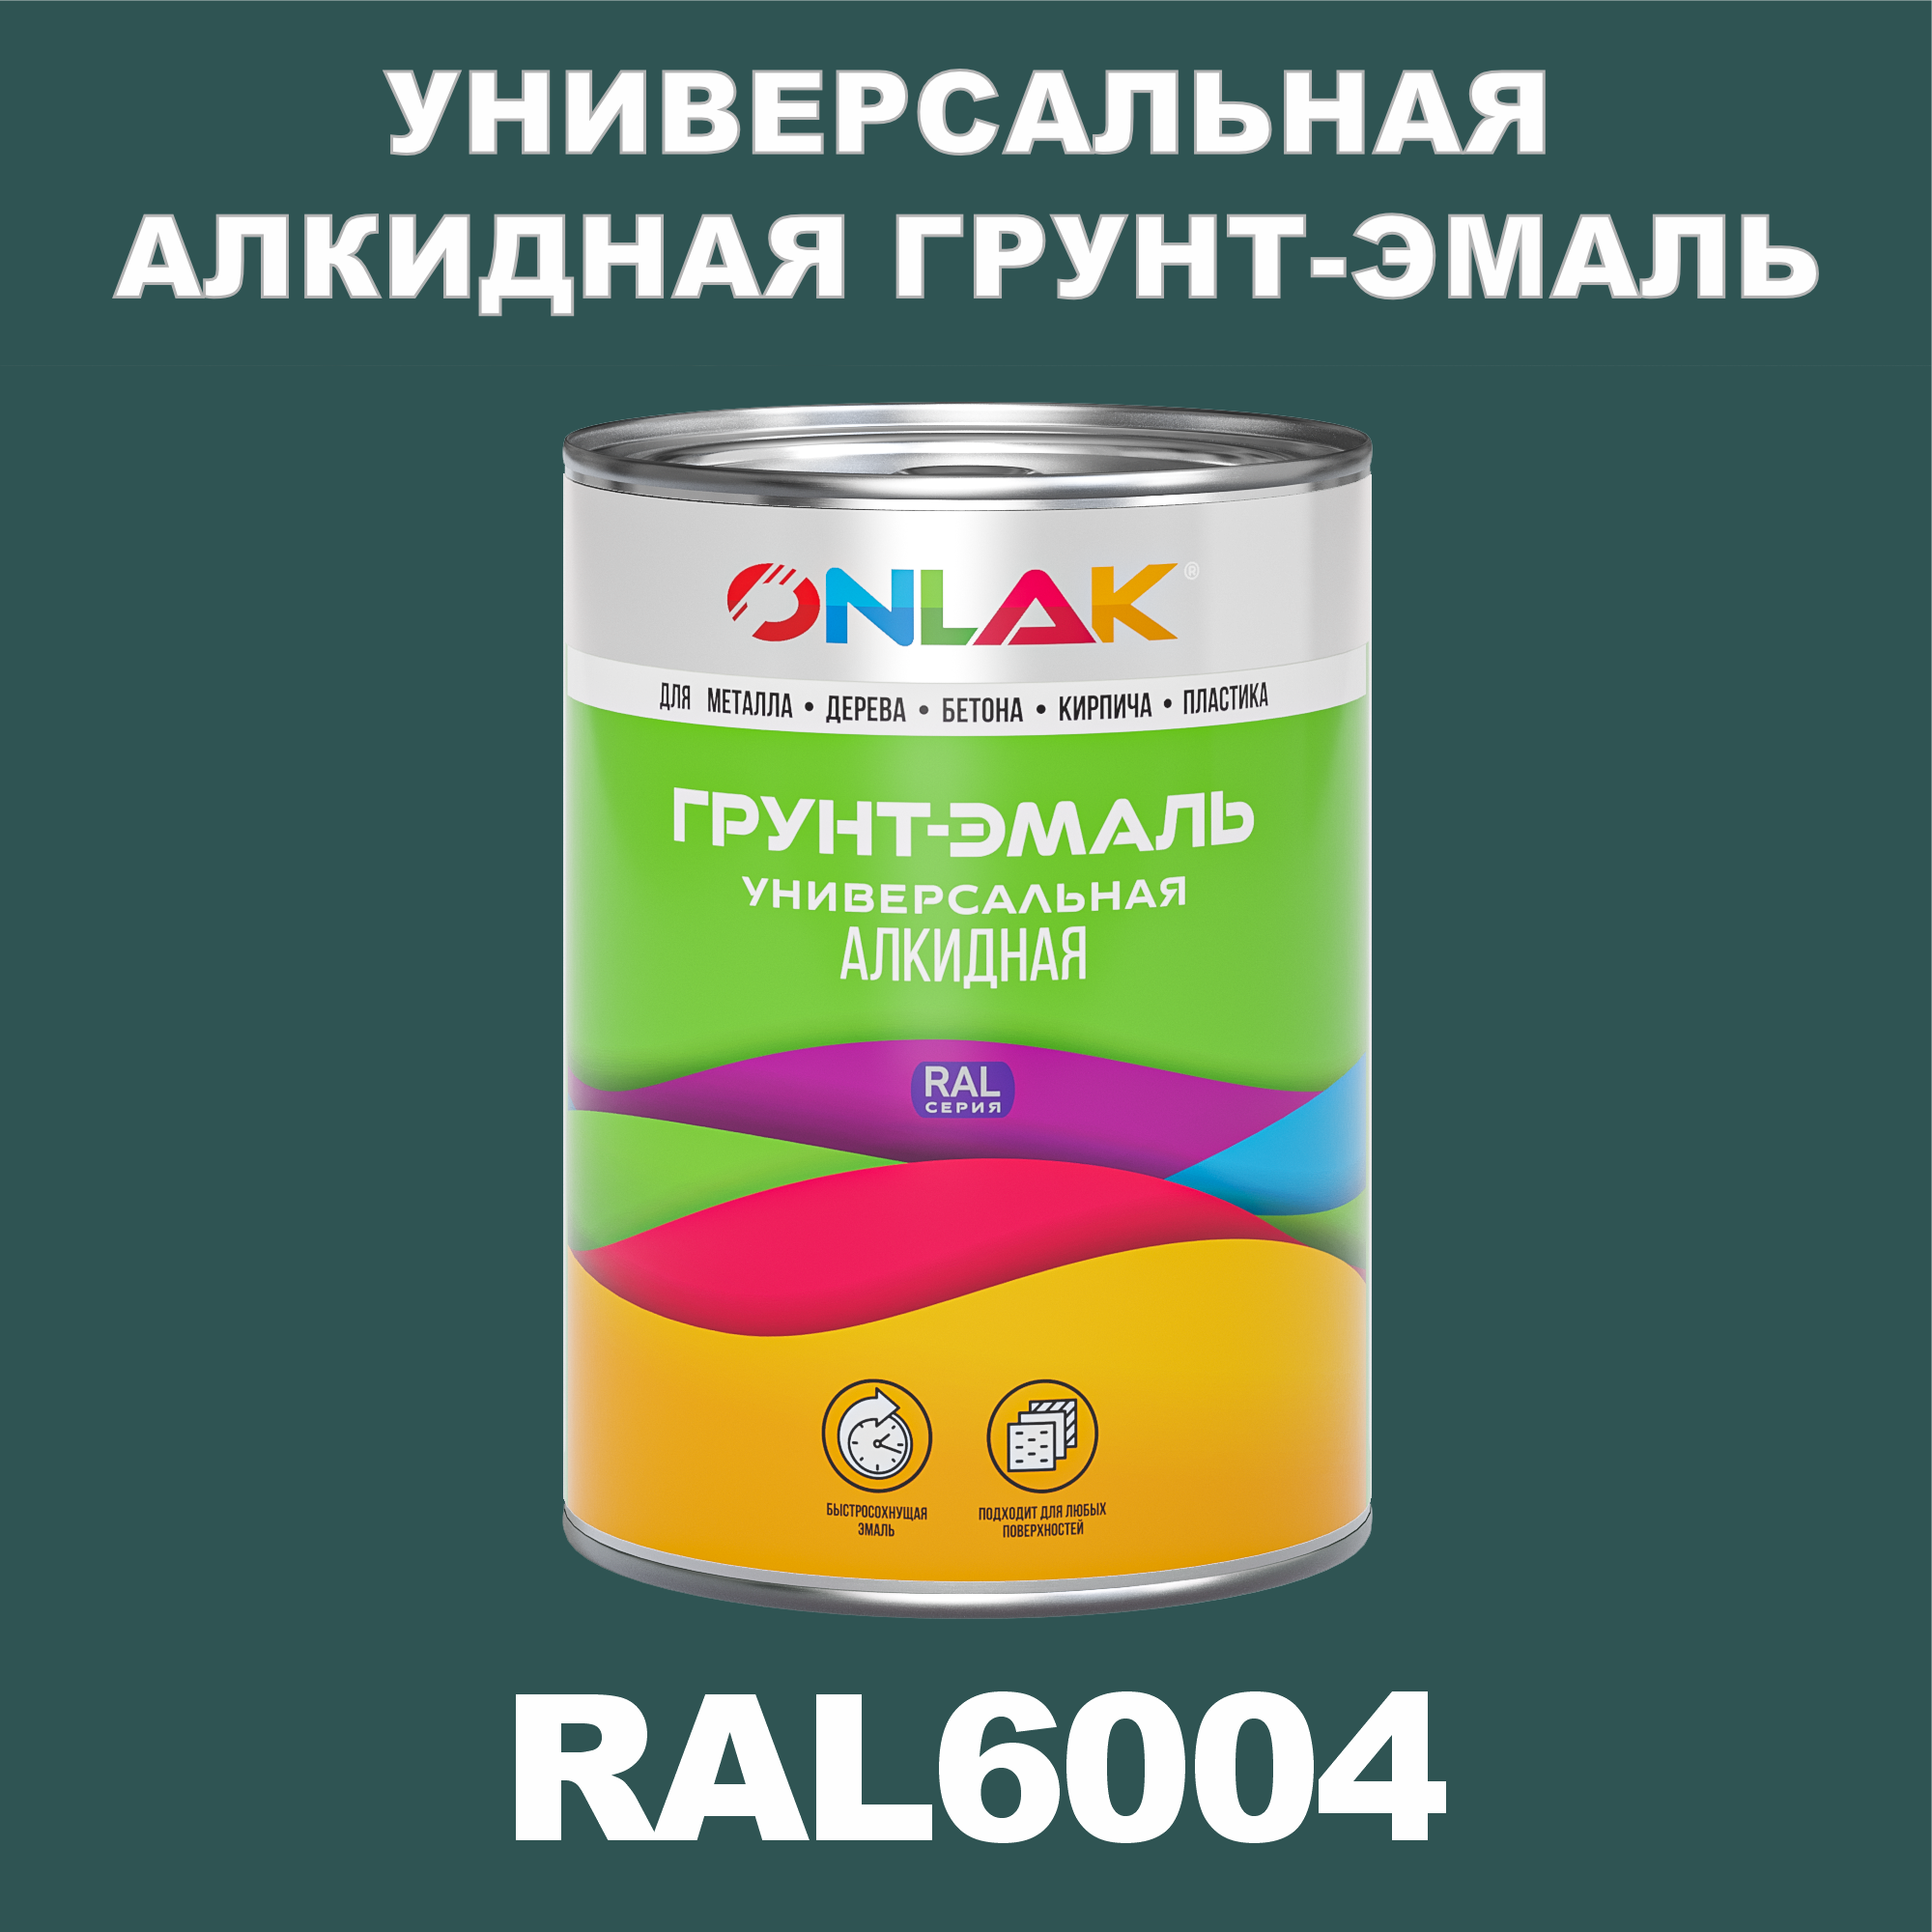 Грунт-эмаль ONLAK 1К RAL6004 антикоррозионная алкидная по металлу по ржавчине 1 кг грунт эмаль рас по ржавчине алкидная синяя 0 9 кг